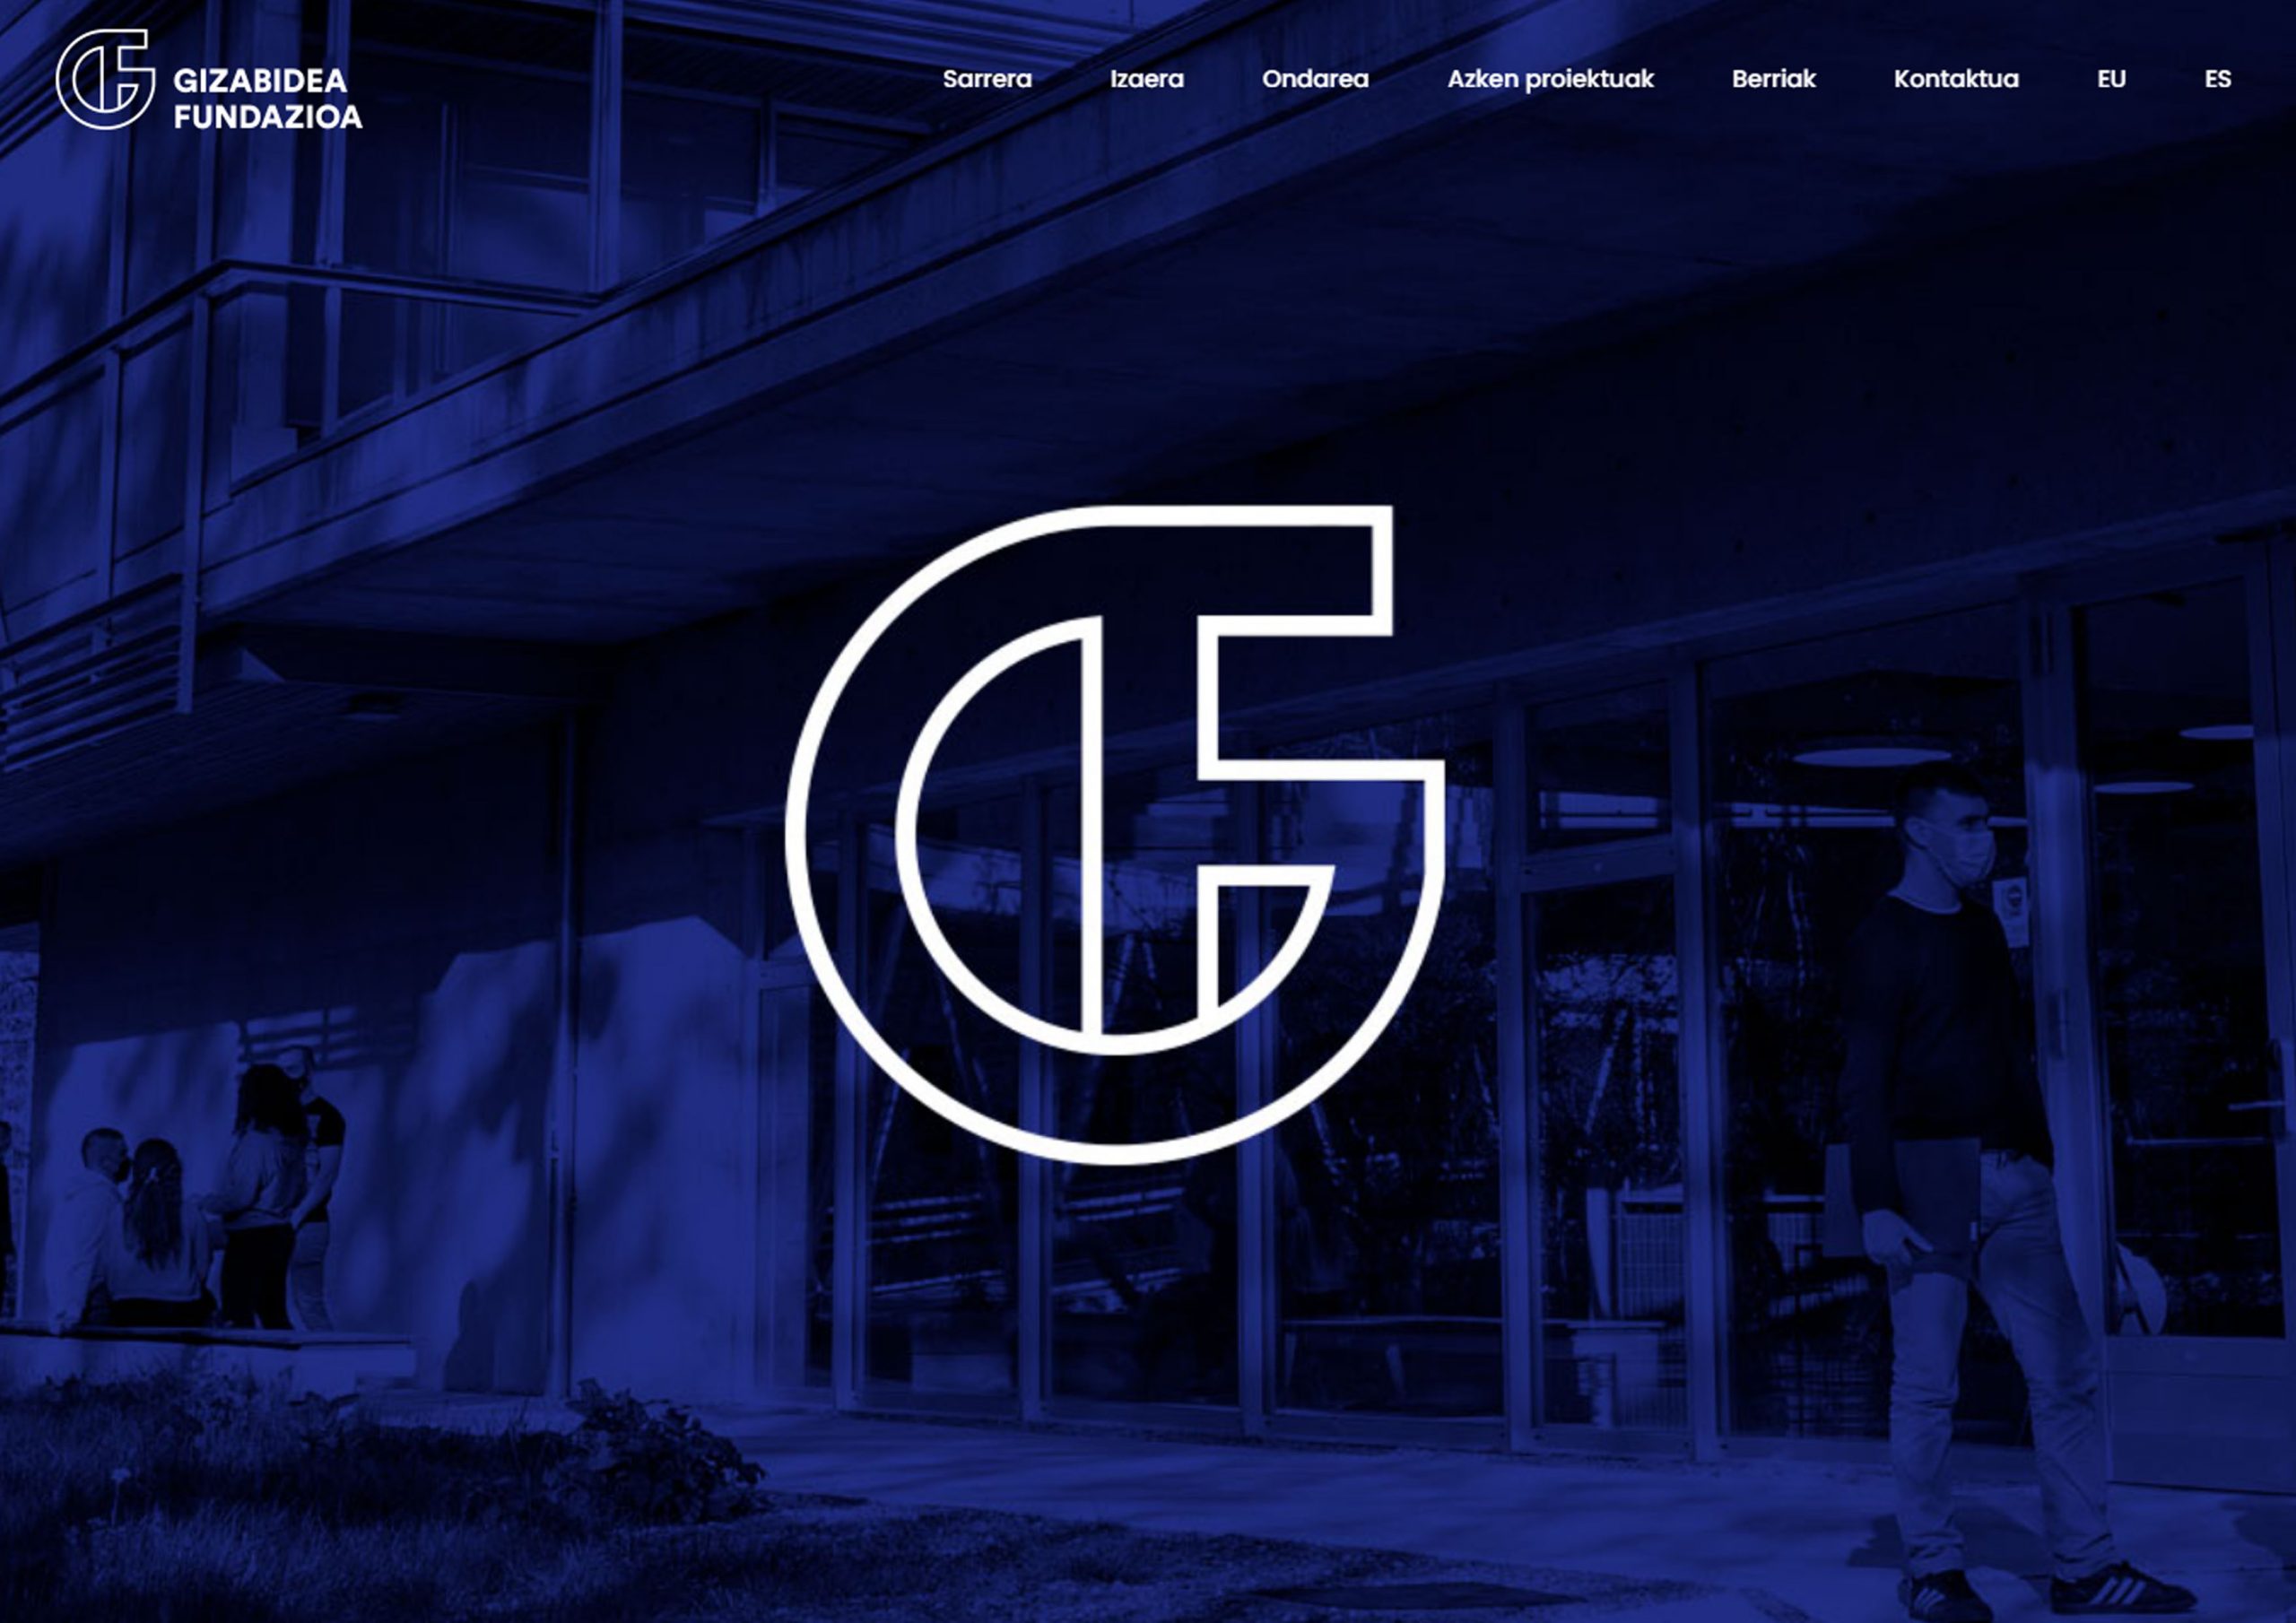 La Fundación Gizabidea presenta su propia web con la intención de acercarse a la comunidad